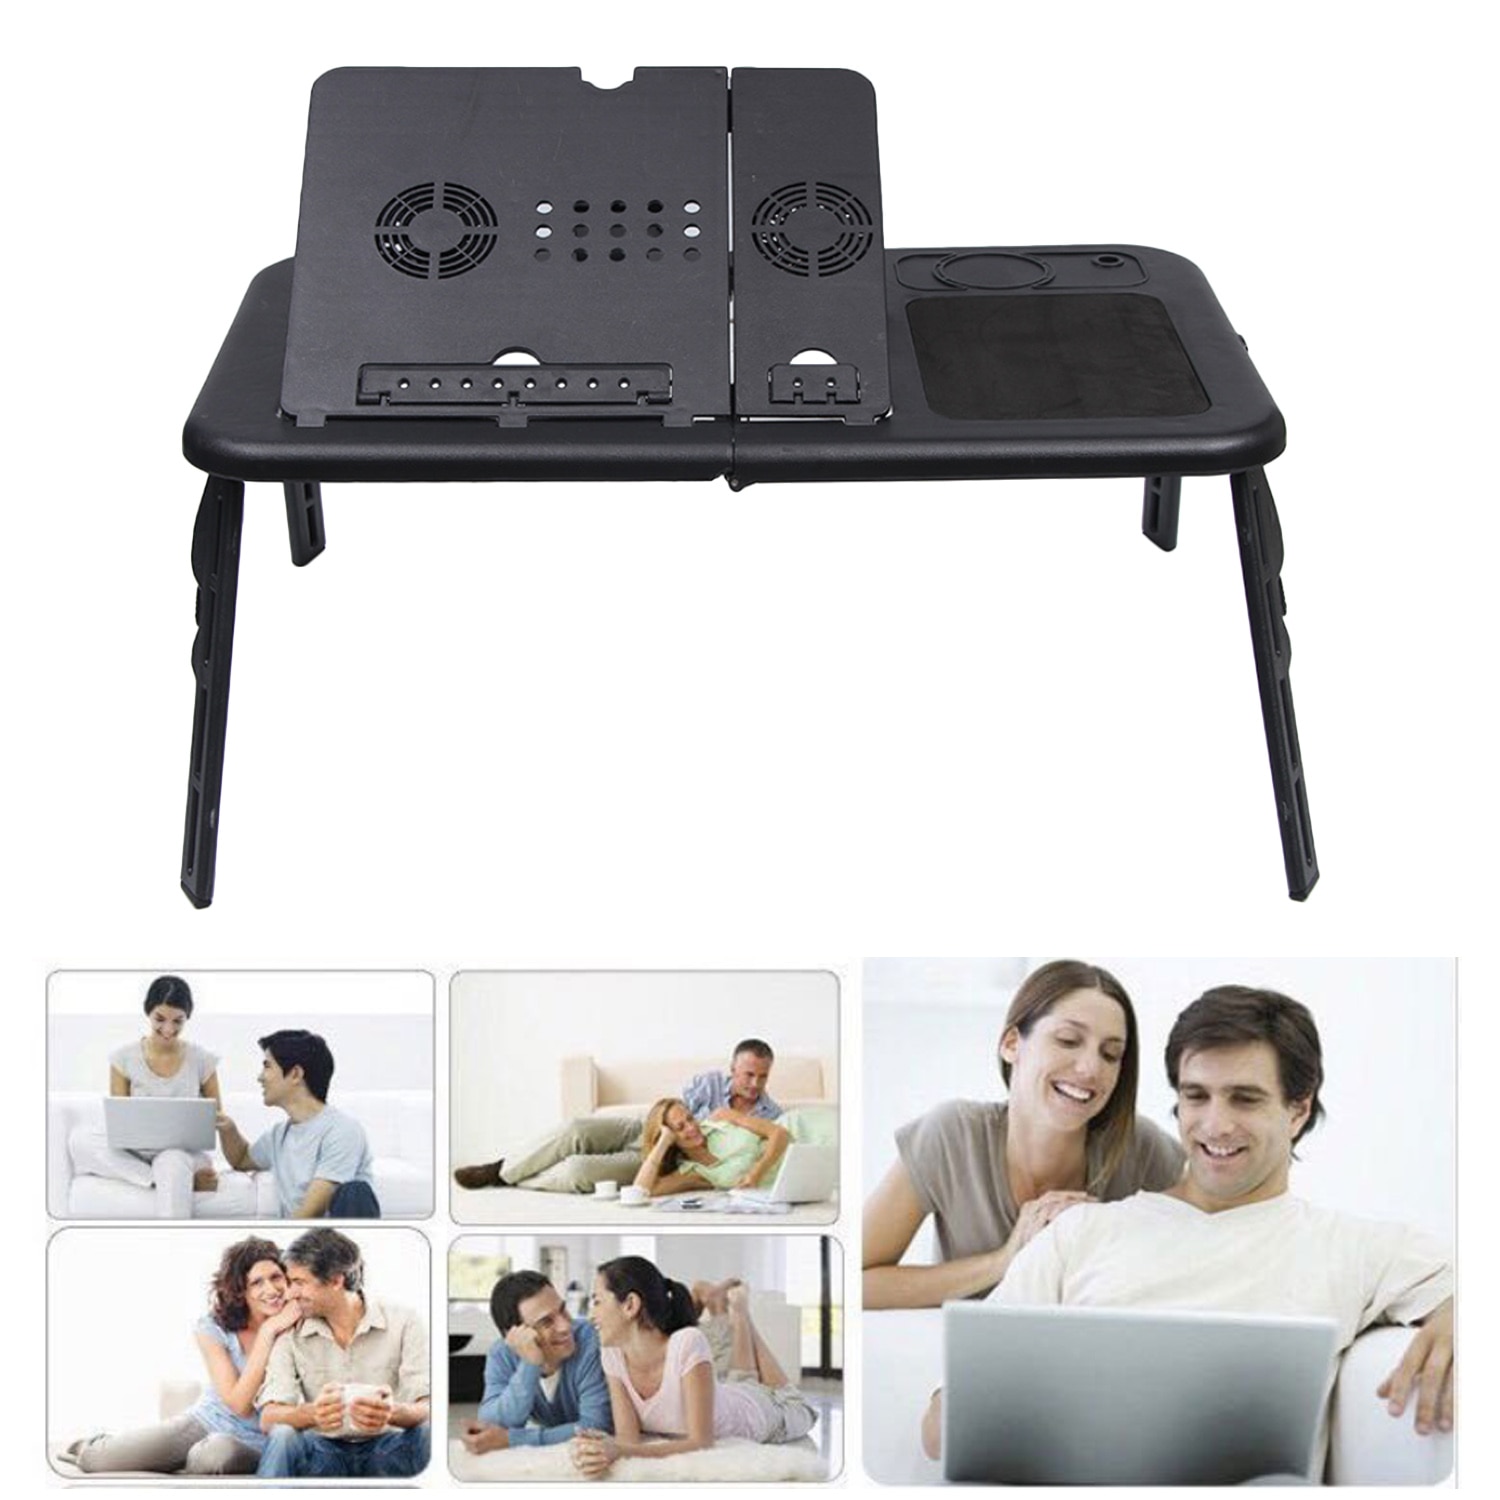 Besegad taşınabilir katlanabilir ayarlanabilir dizüstü yatak tepsisi USB dizüstü PC masa masa standı 2 soğutma fanı ile fare bardak tutucu siyah PE11262